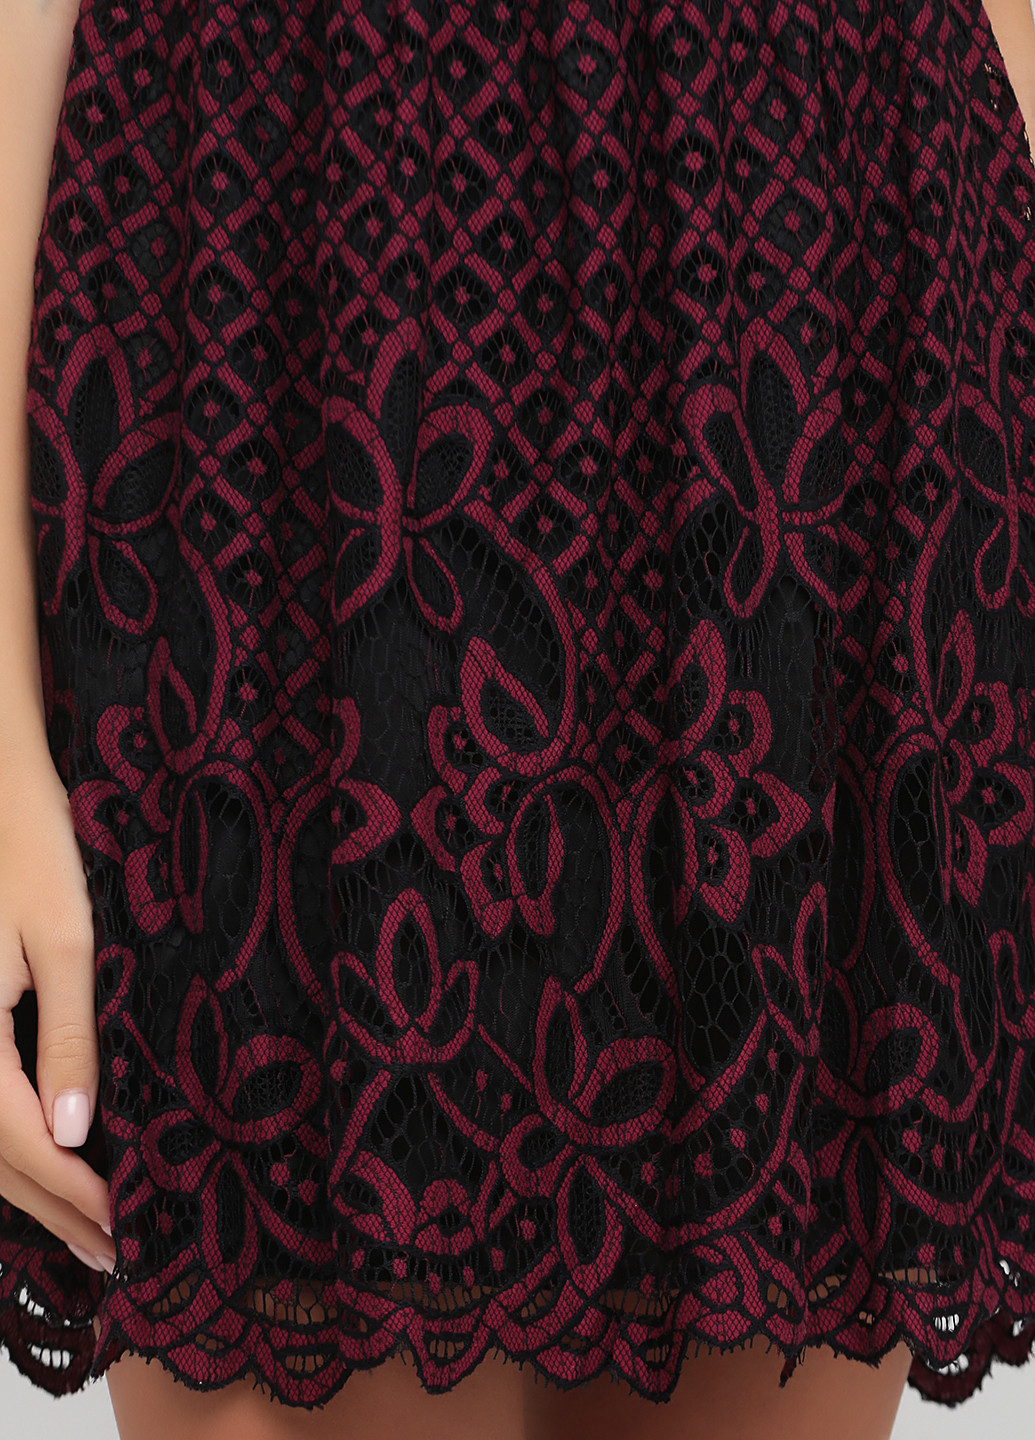 Бордовое коктейльное платье Francesca's однотонное